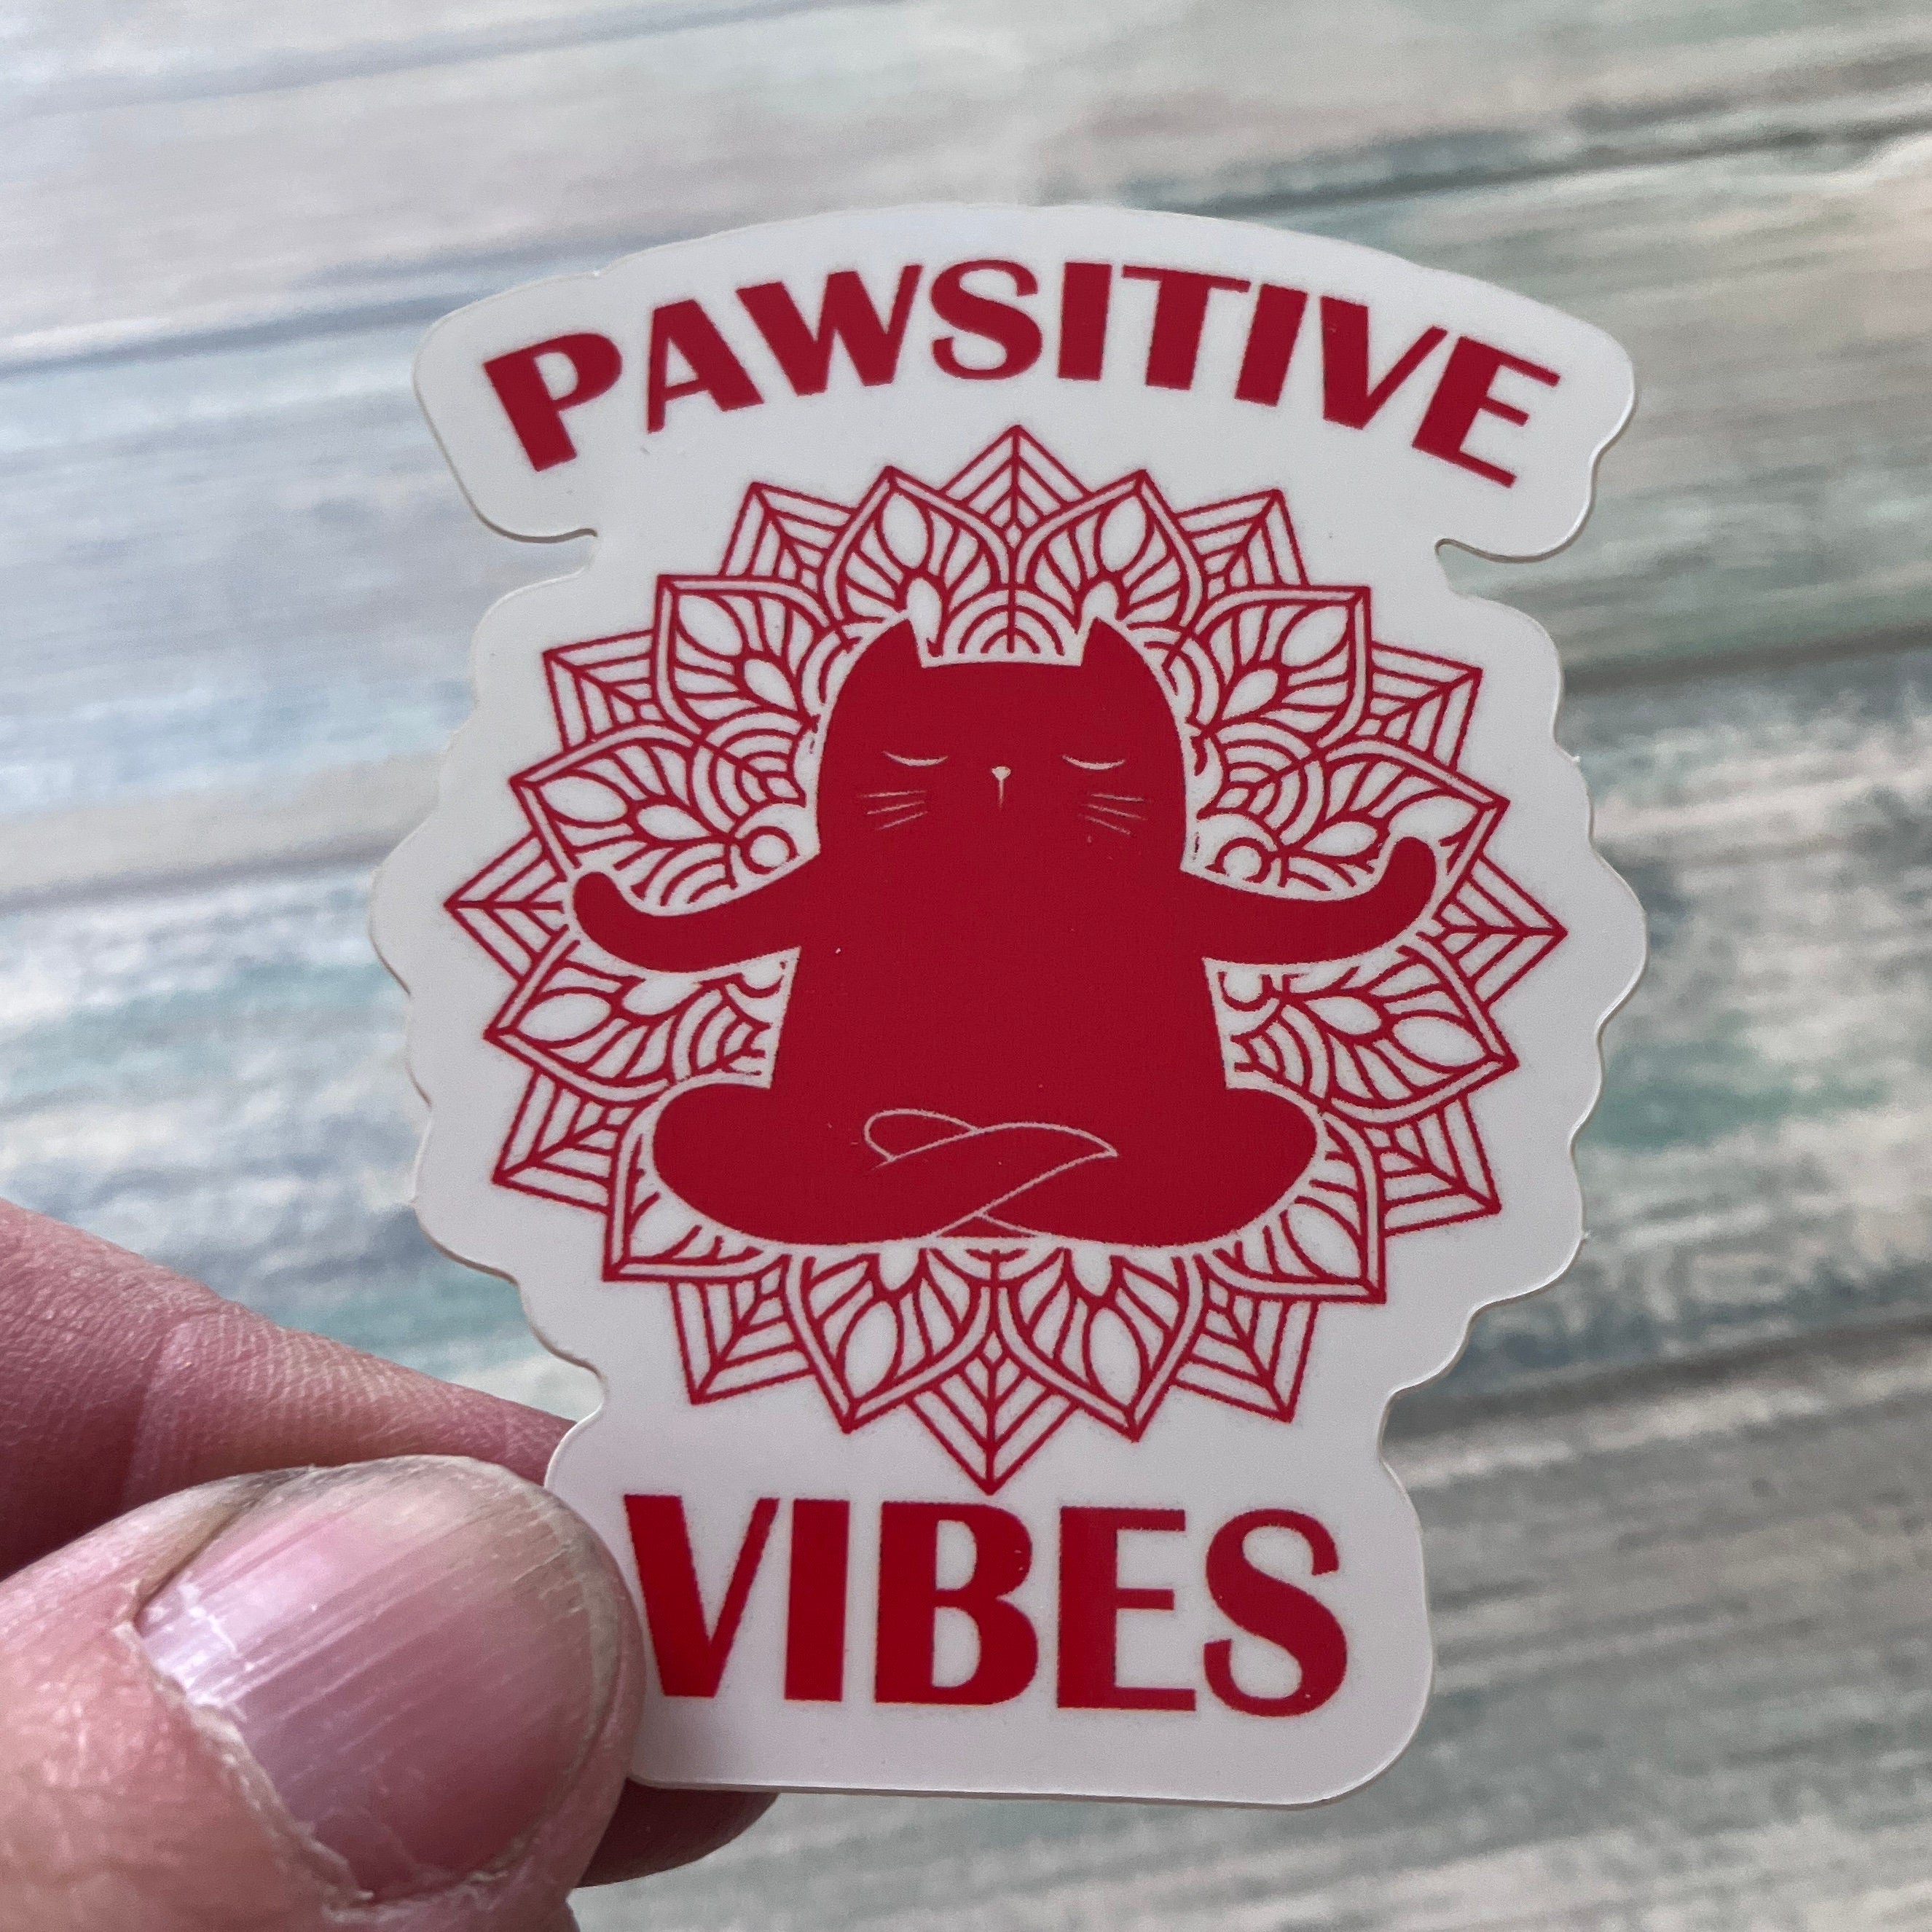 Pawsitive Vibes Sticker - Vinyl Sticker - Vinyl Cat Sticker - Spiritual Sticker